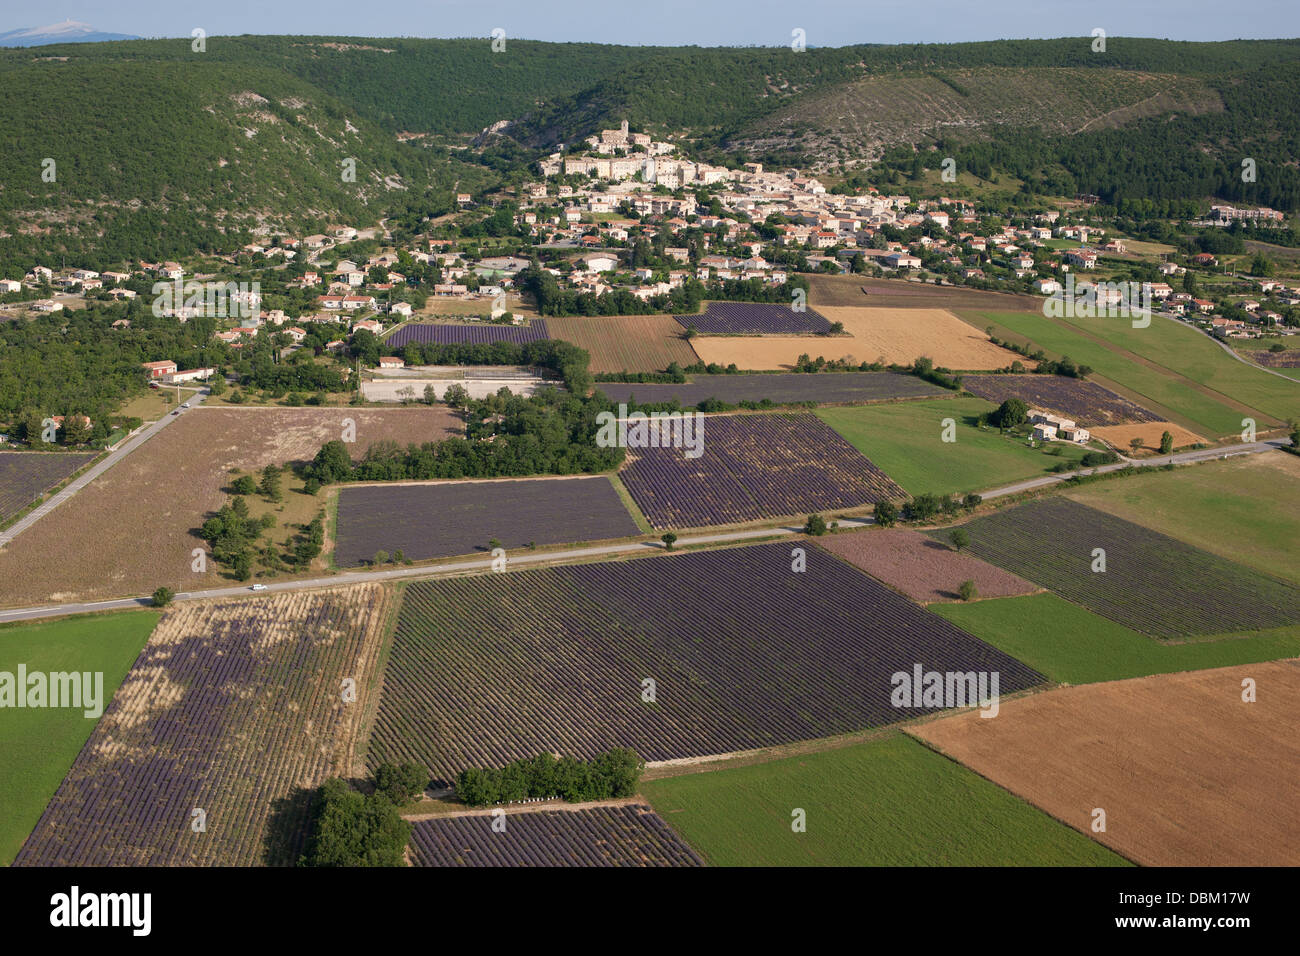 VISTA AEREA. Villaggio collinare provenzale che domina campi di lavanda in fiore. Banon, Alpi dell'alta Provenza, Provenza, Francia. Foto Stock